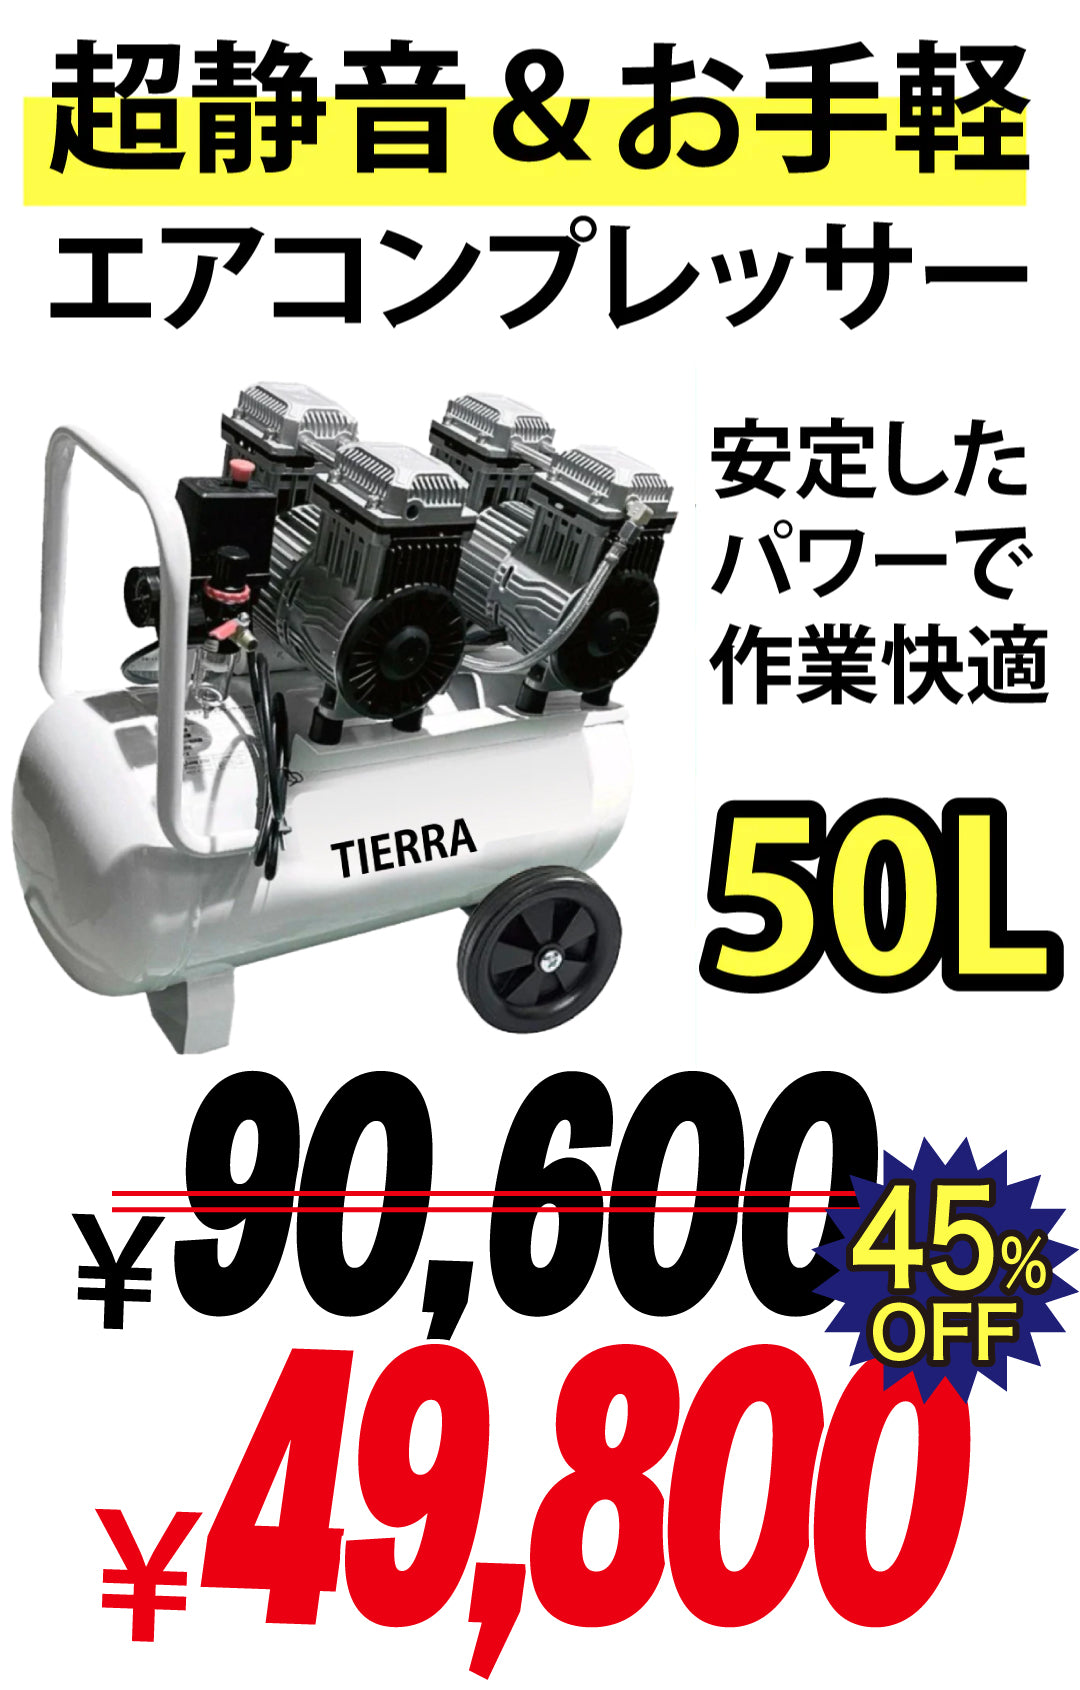 【売り尽くしセール中】TIERRA エアーコンプレッサー50L【即日発送】